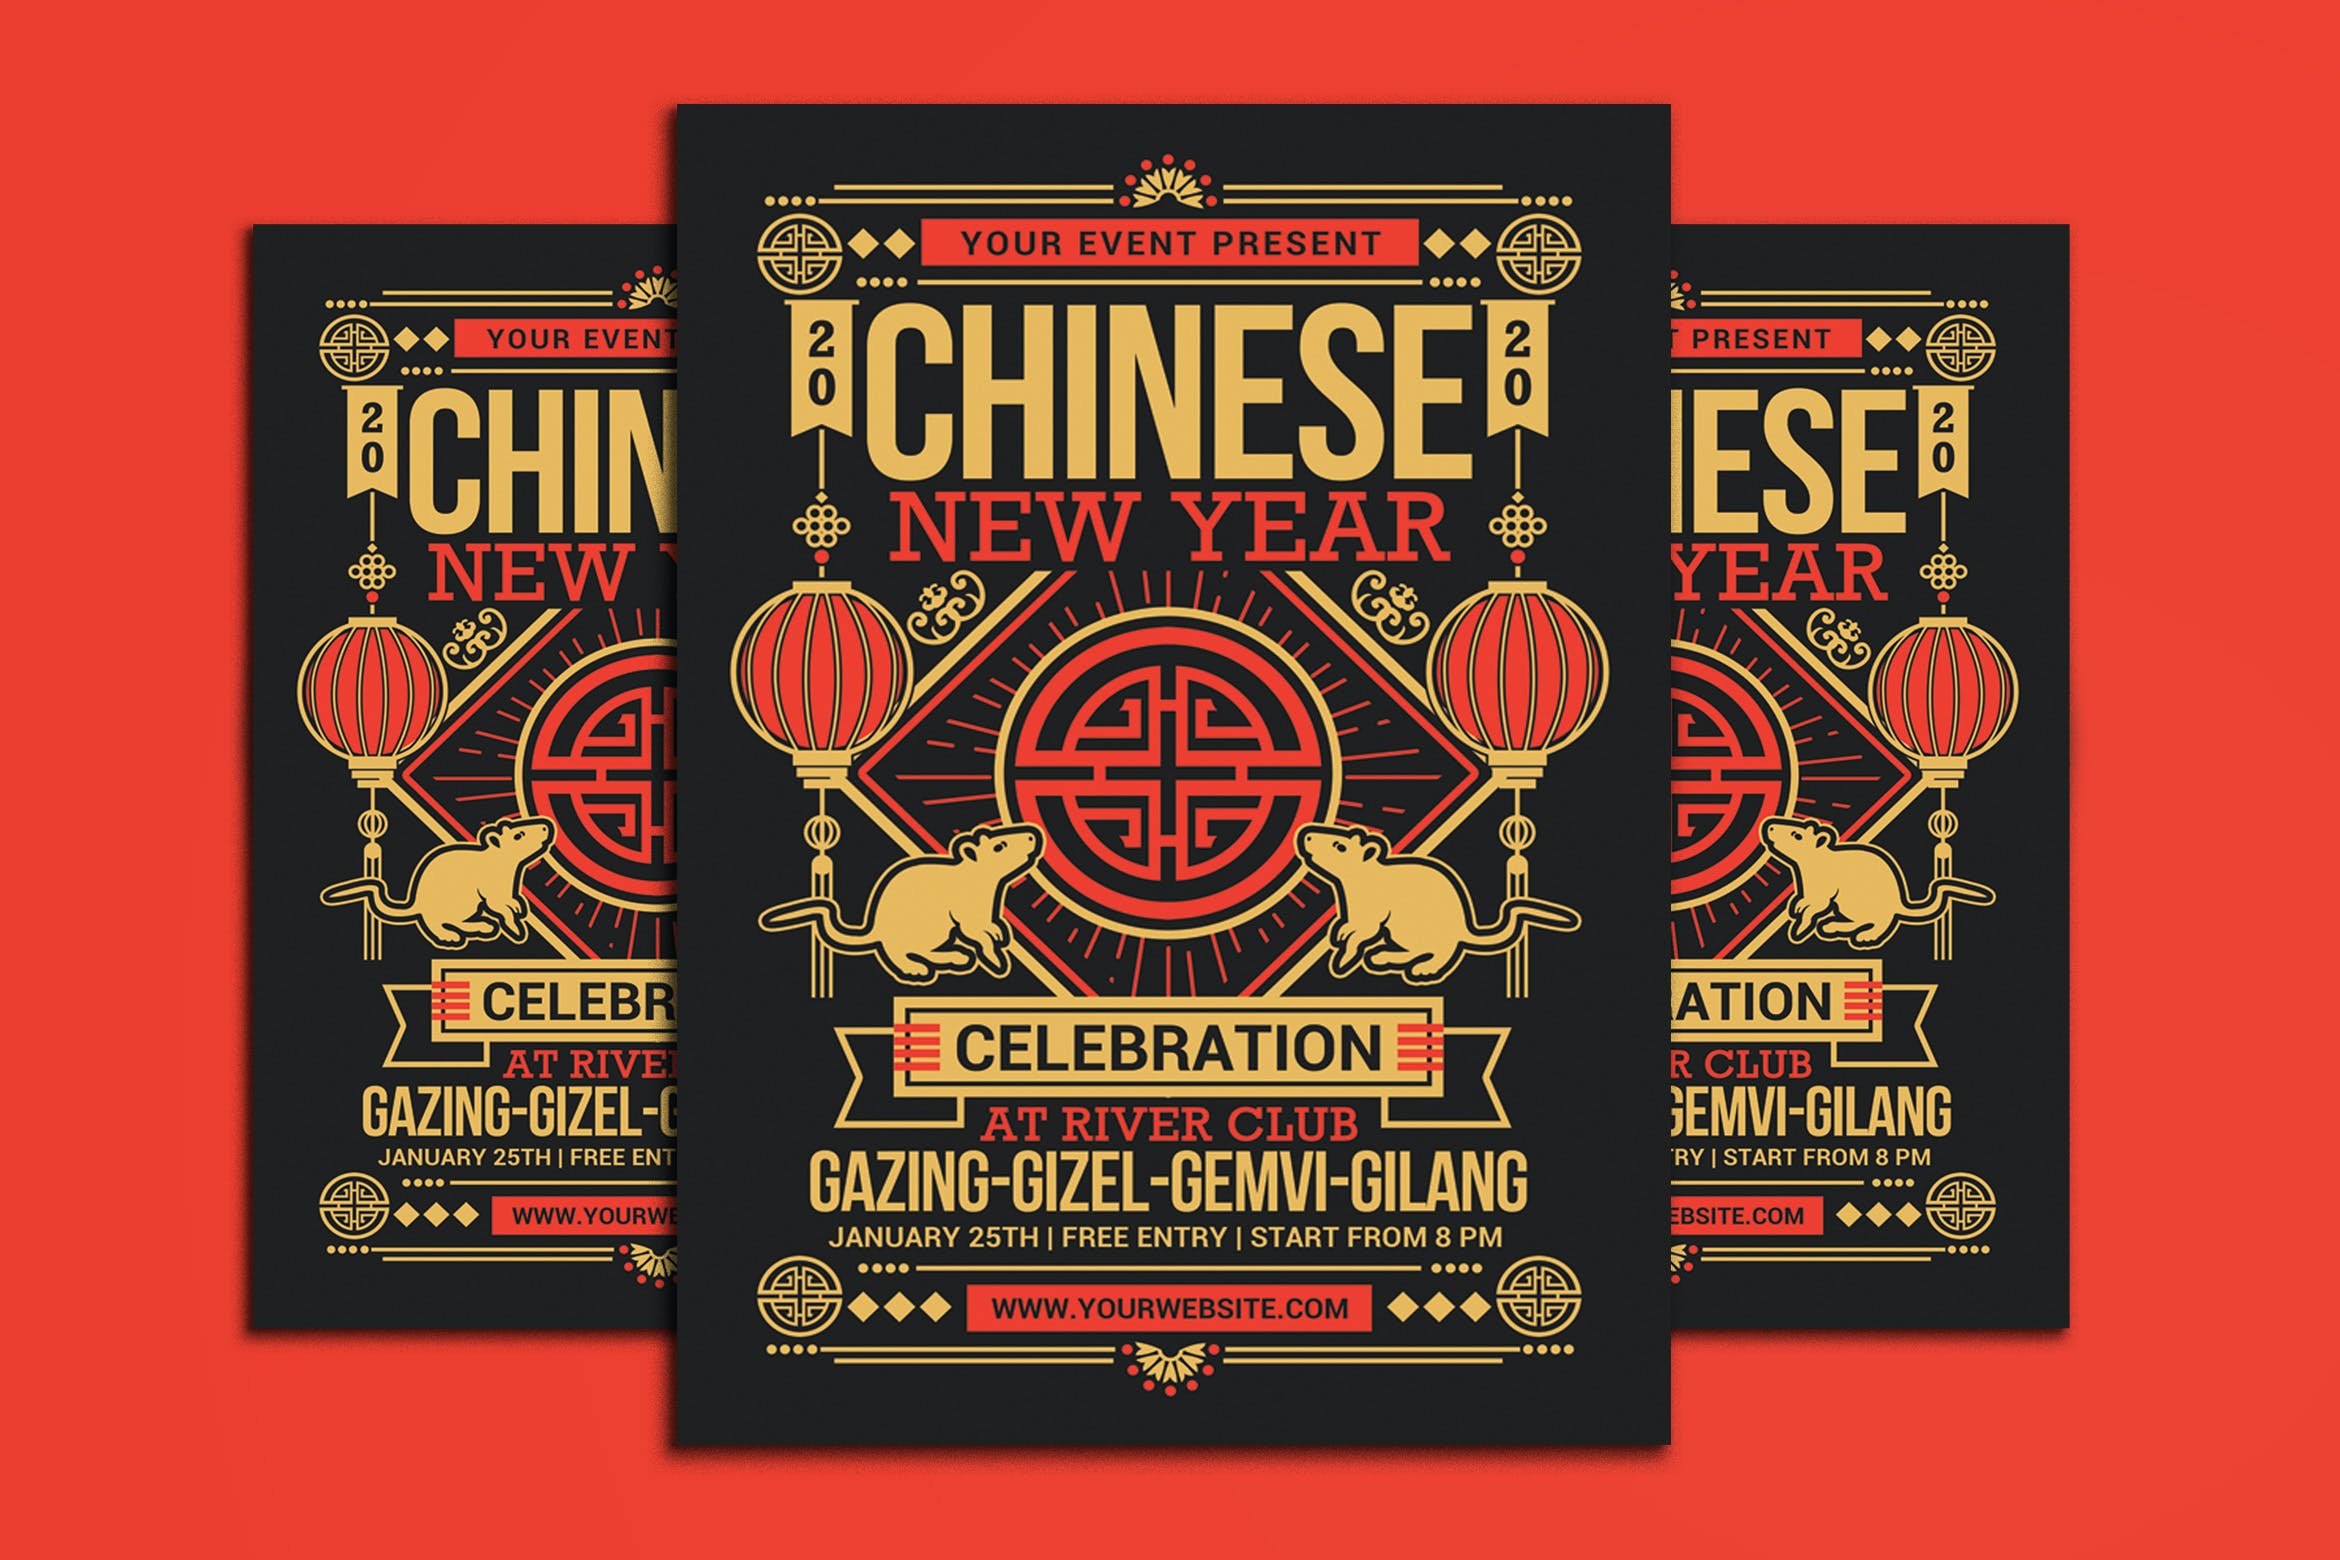 新年海报复古风格中国传统设计模板 Chinese New Year 2020设计素材模板